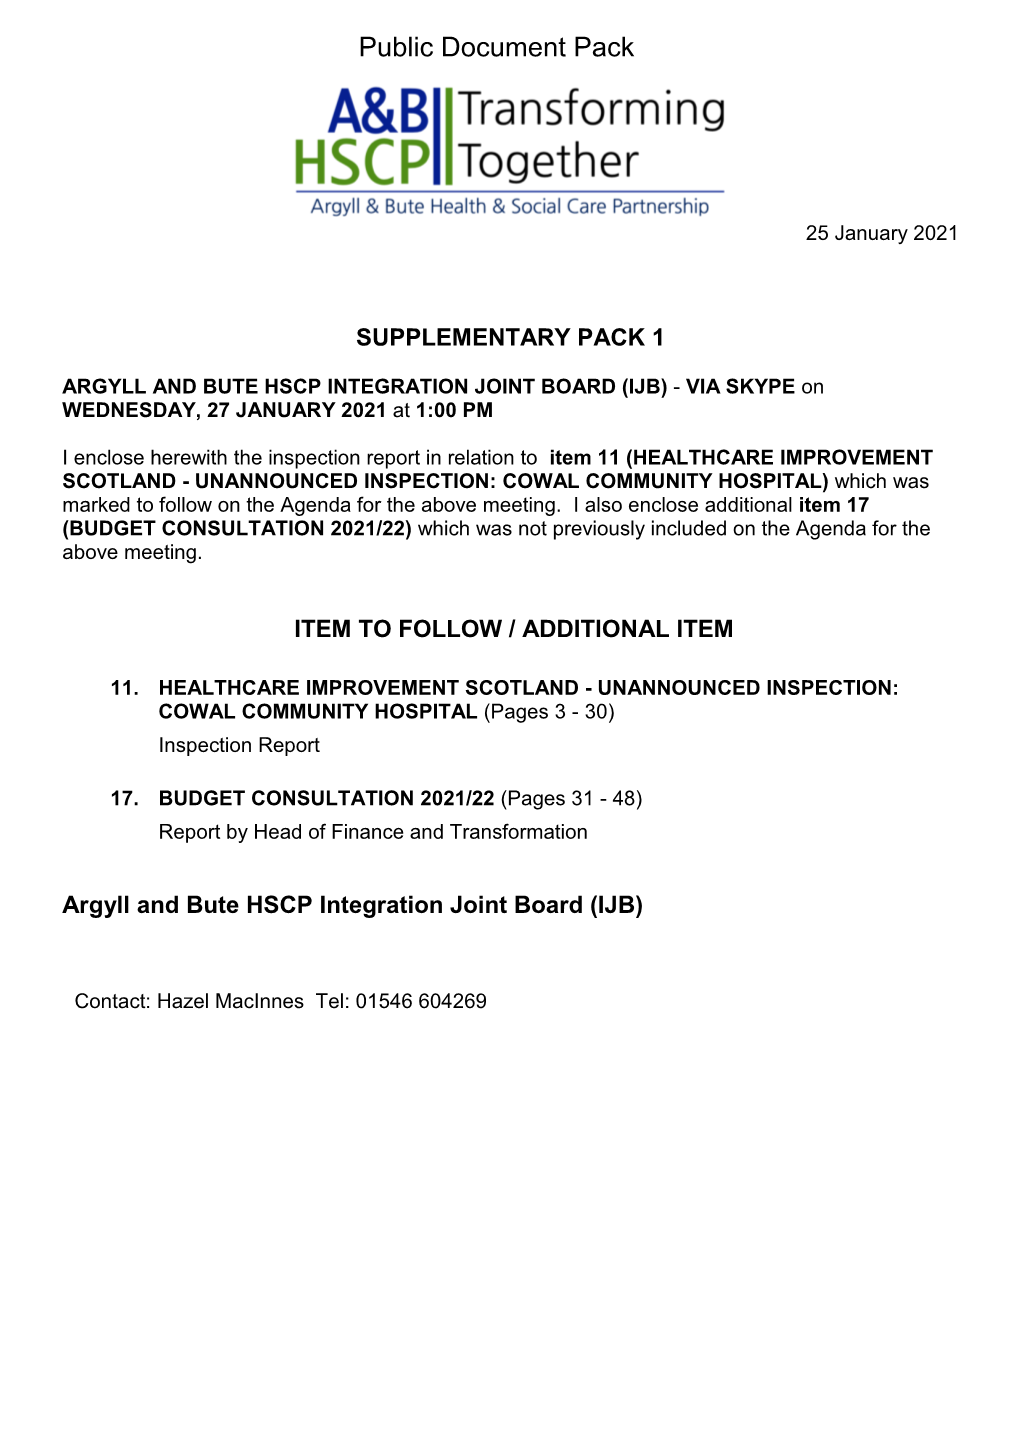 27 January 2021 Agenda Supplement for Argyll